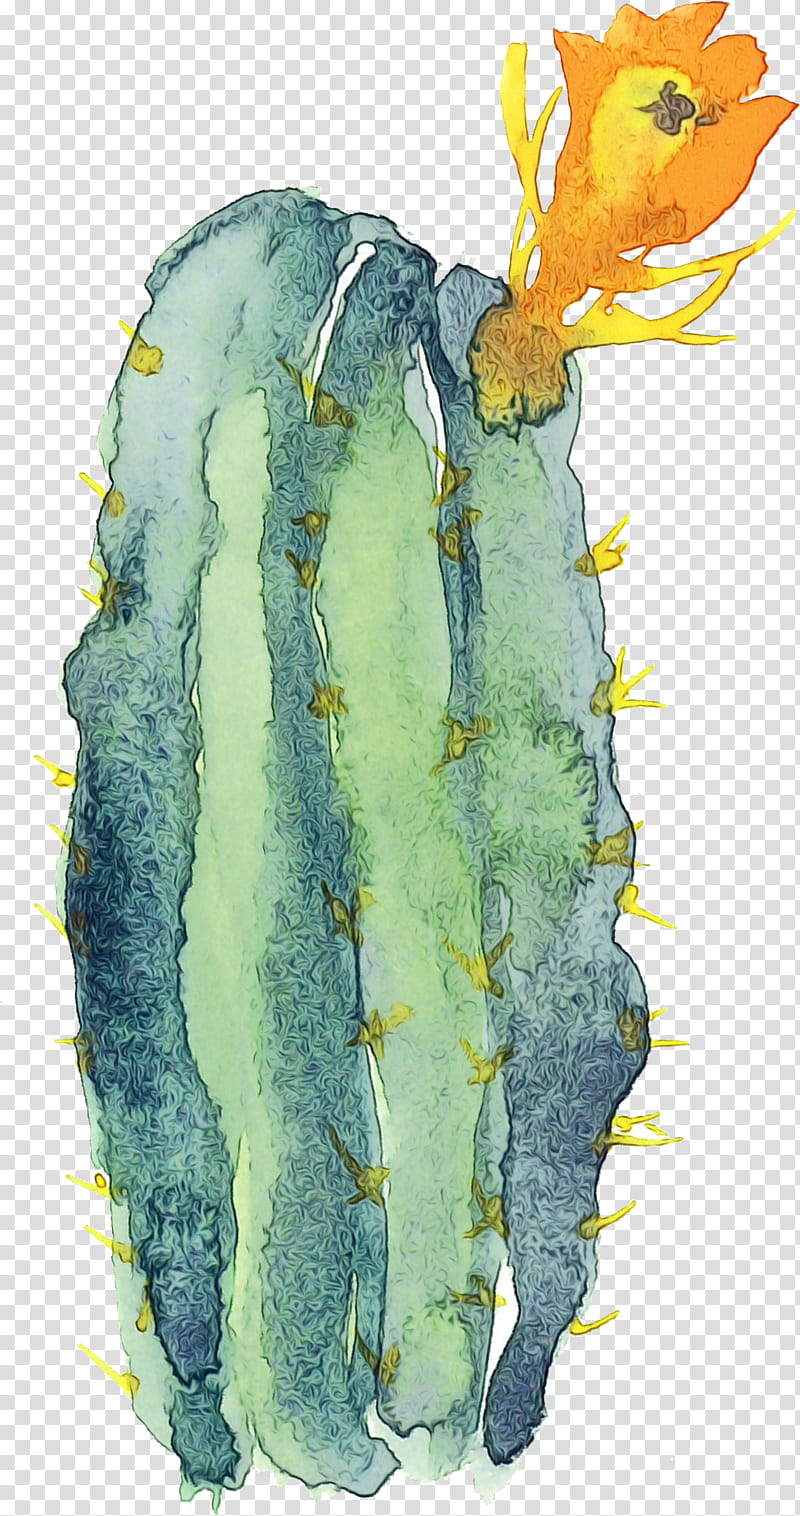 Cactus, Watercolor, Paint, Wet Ink, Yellow, Plant, Plant Pathology, Watercolor Paint transparent background PNG clipart